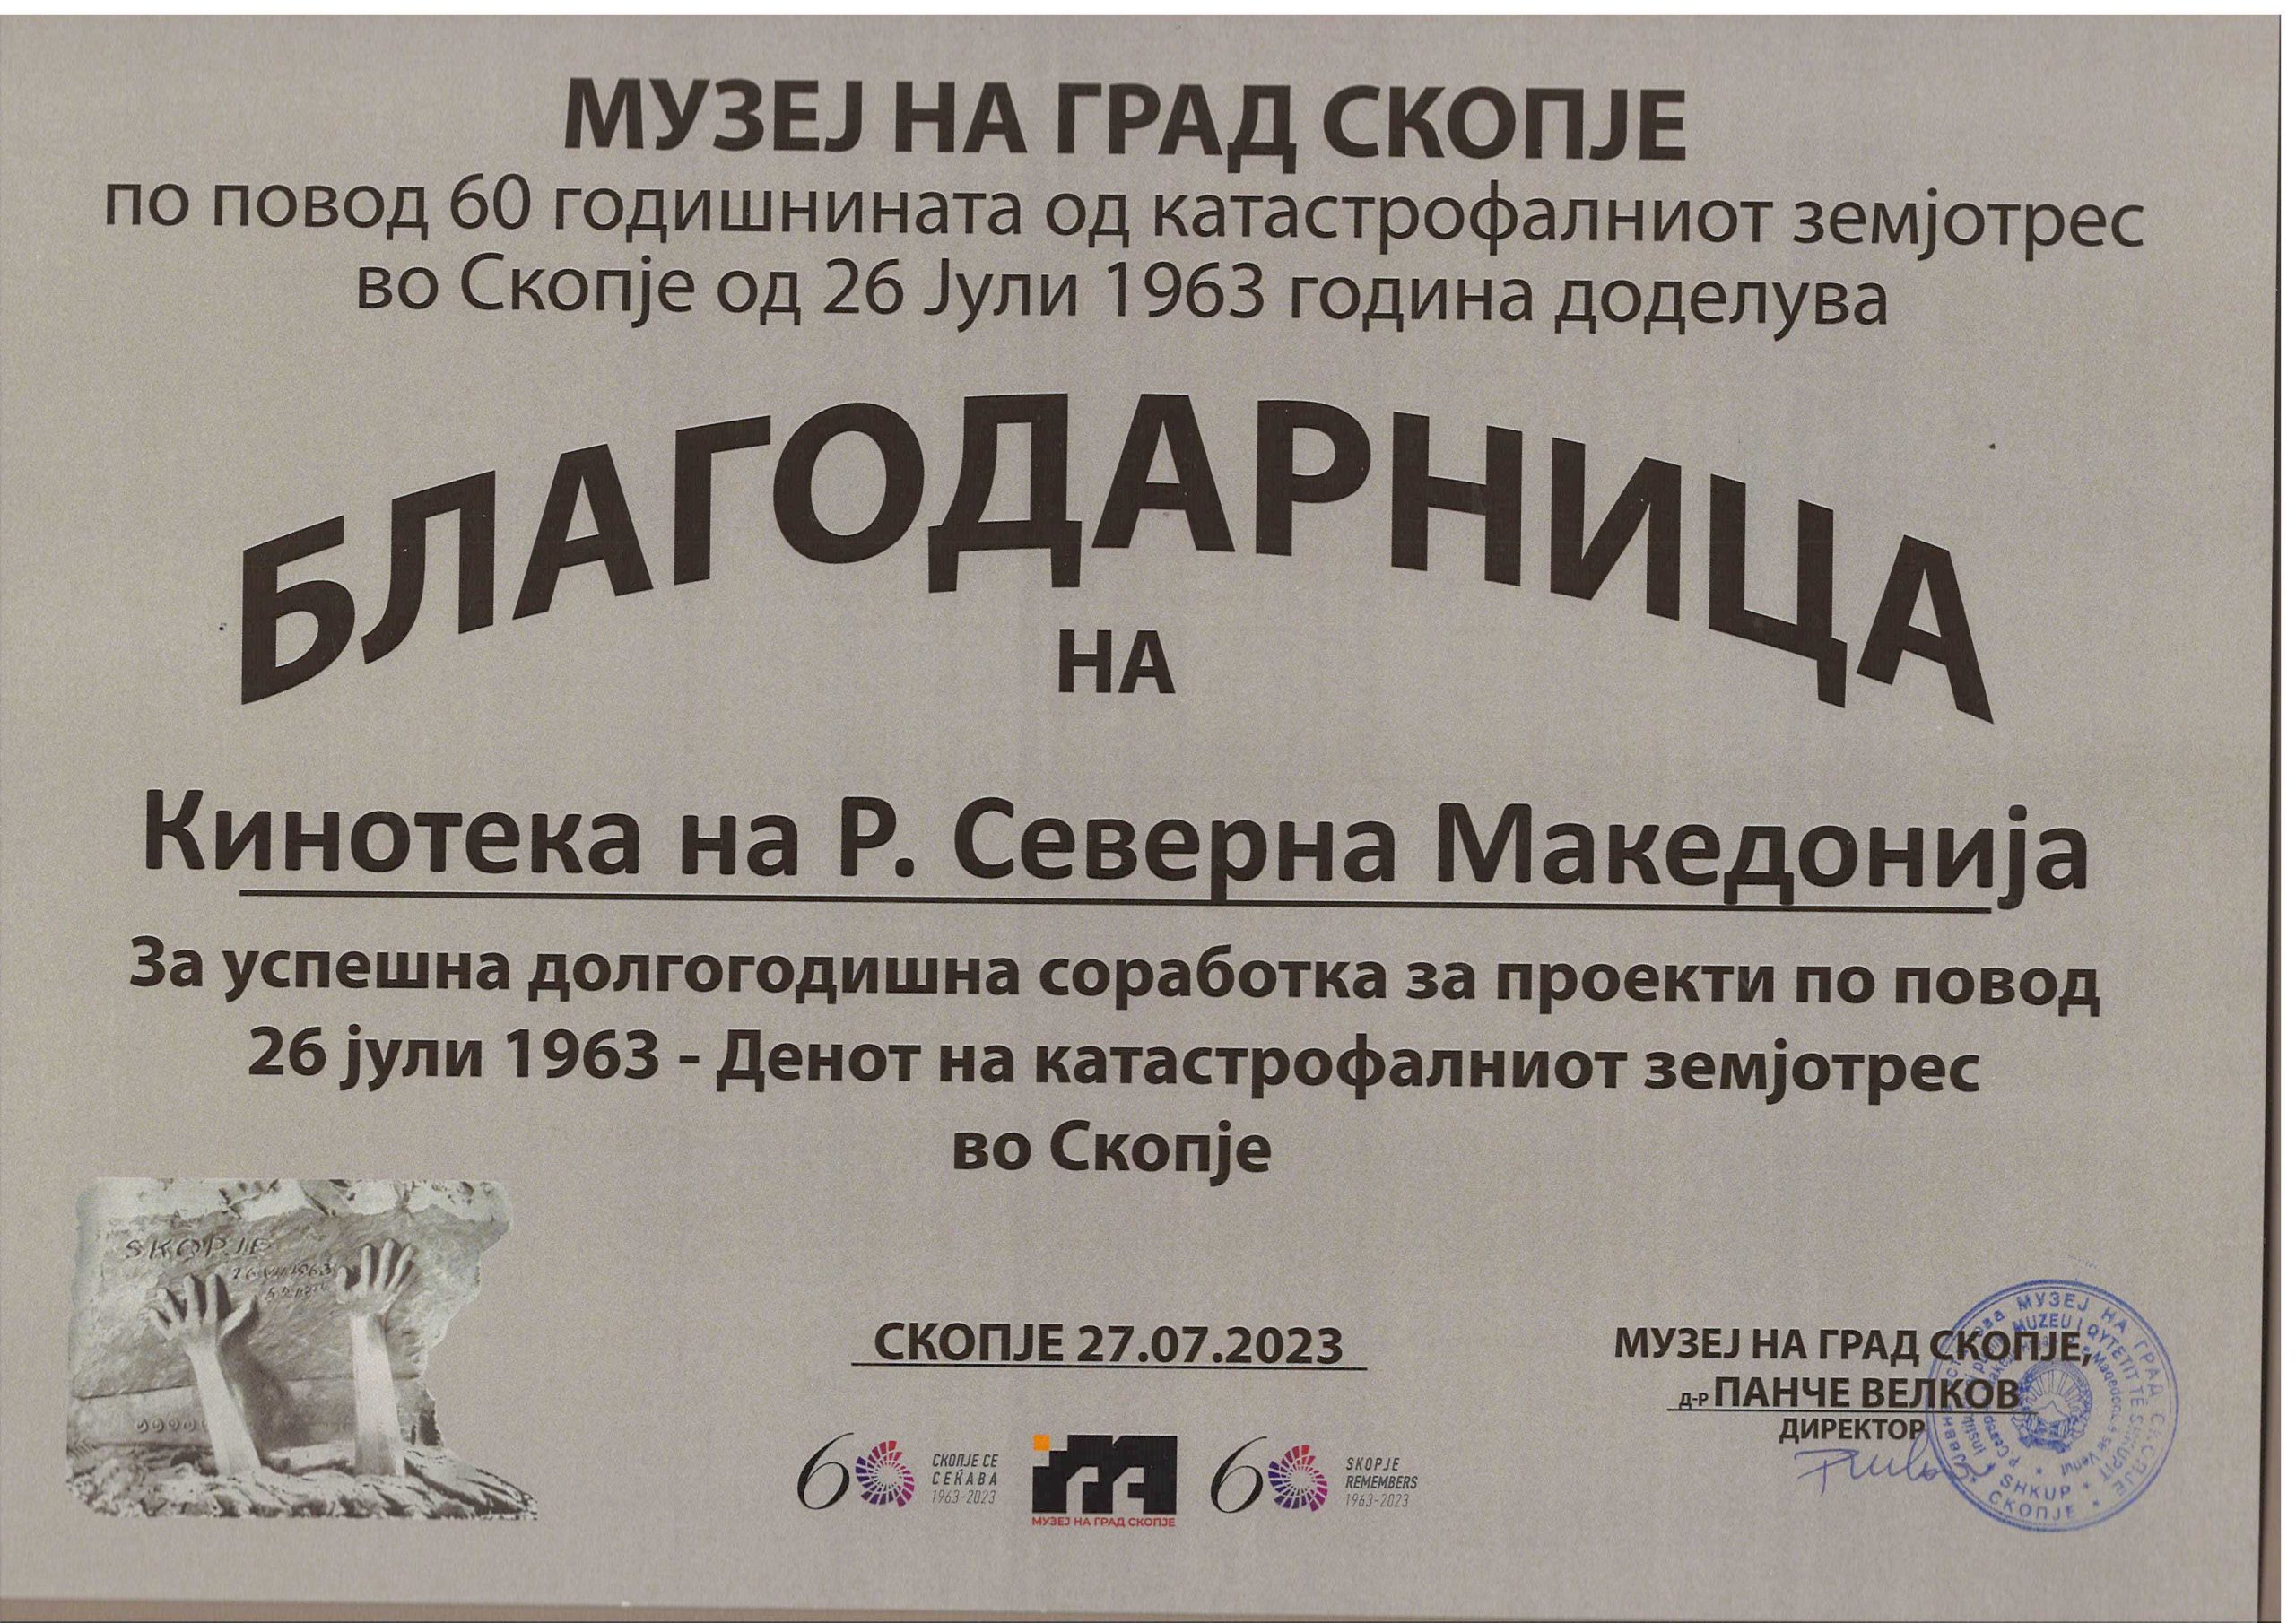 Me rastin e 60-vjetorit të tërmetit katastrofik në Shkup të 26 korrikut të vitit 1963, Muzeu i Qytetit të Shkupit ndau Mirënjohje për Kinotekën e Maqedonisë së Veriut